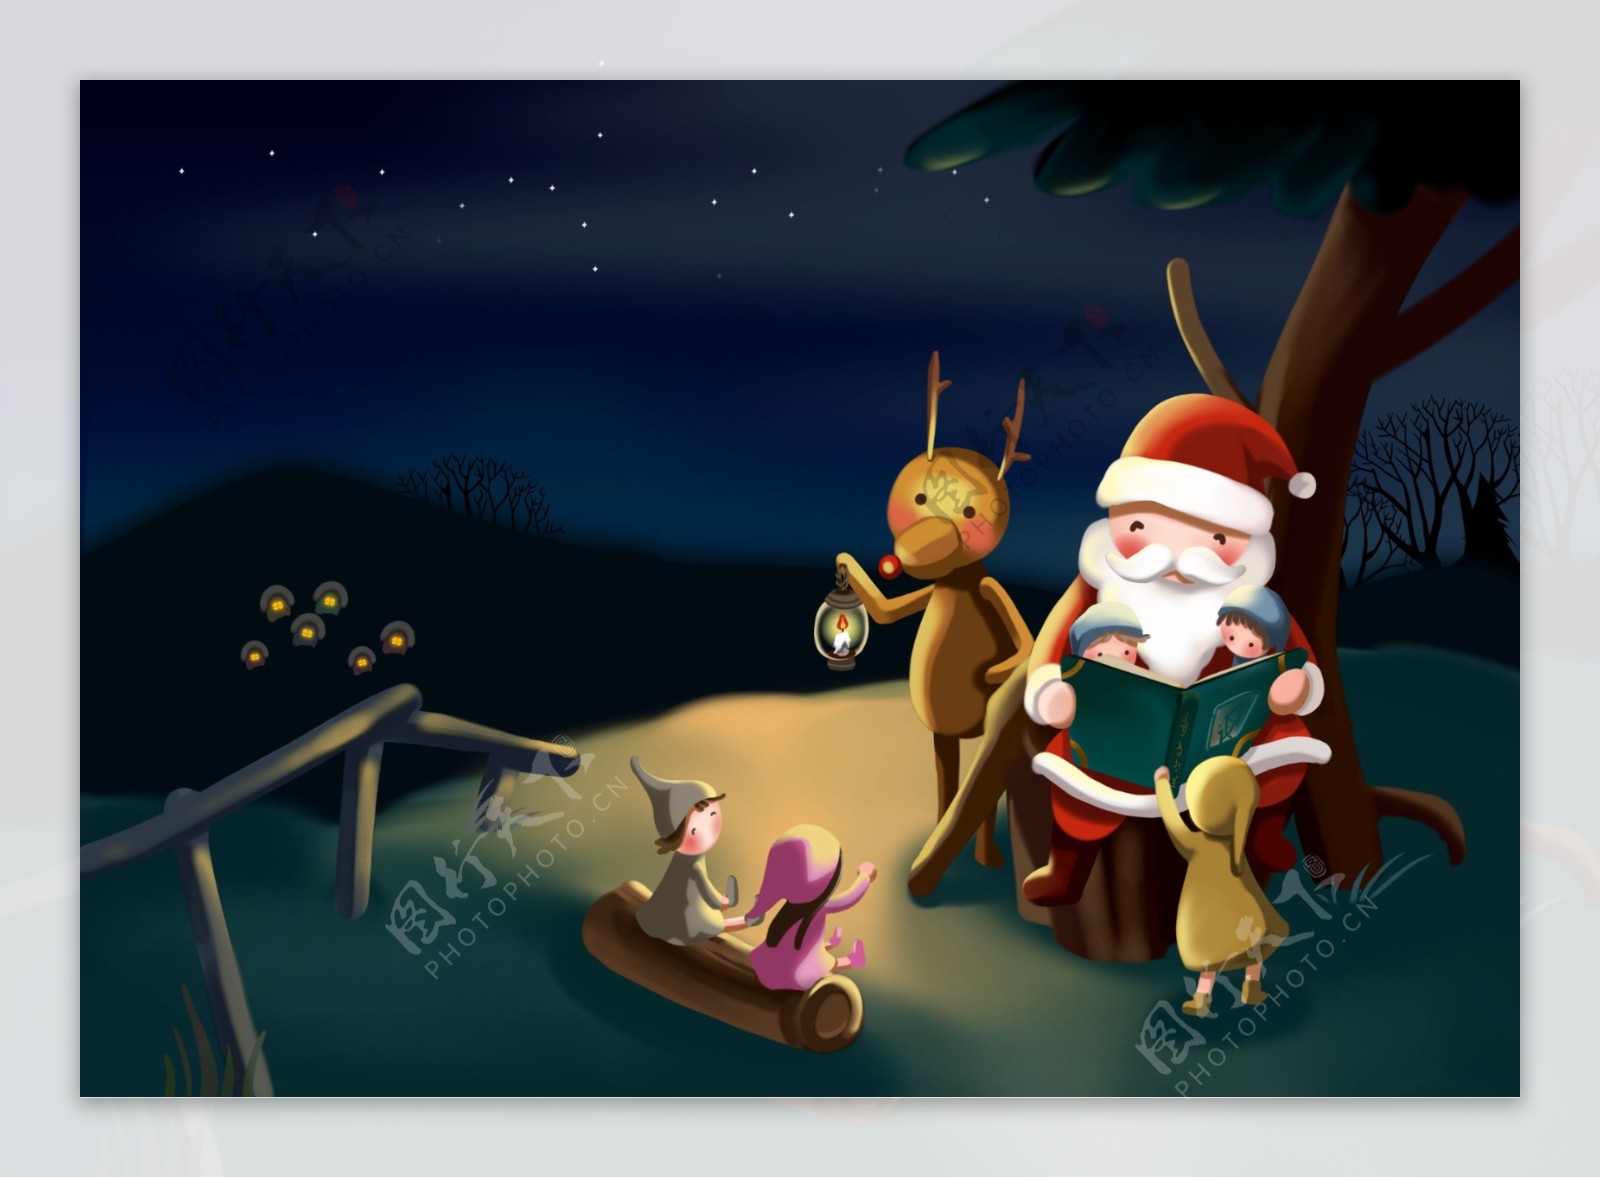 树下讲故事的圣诞老人